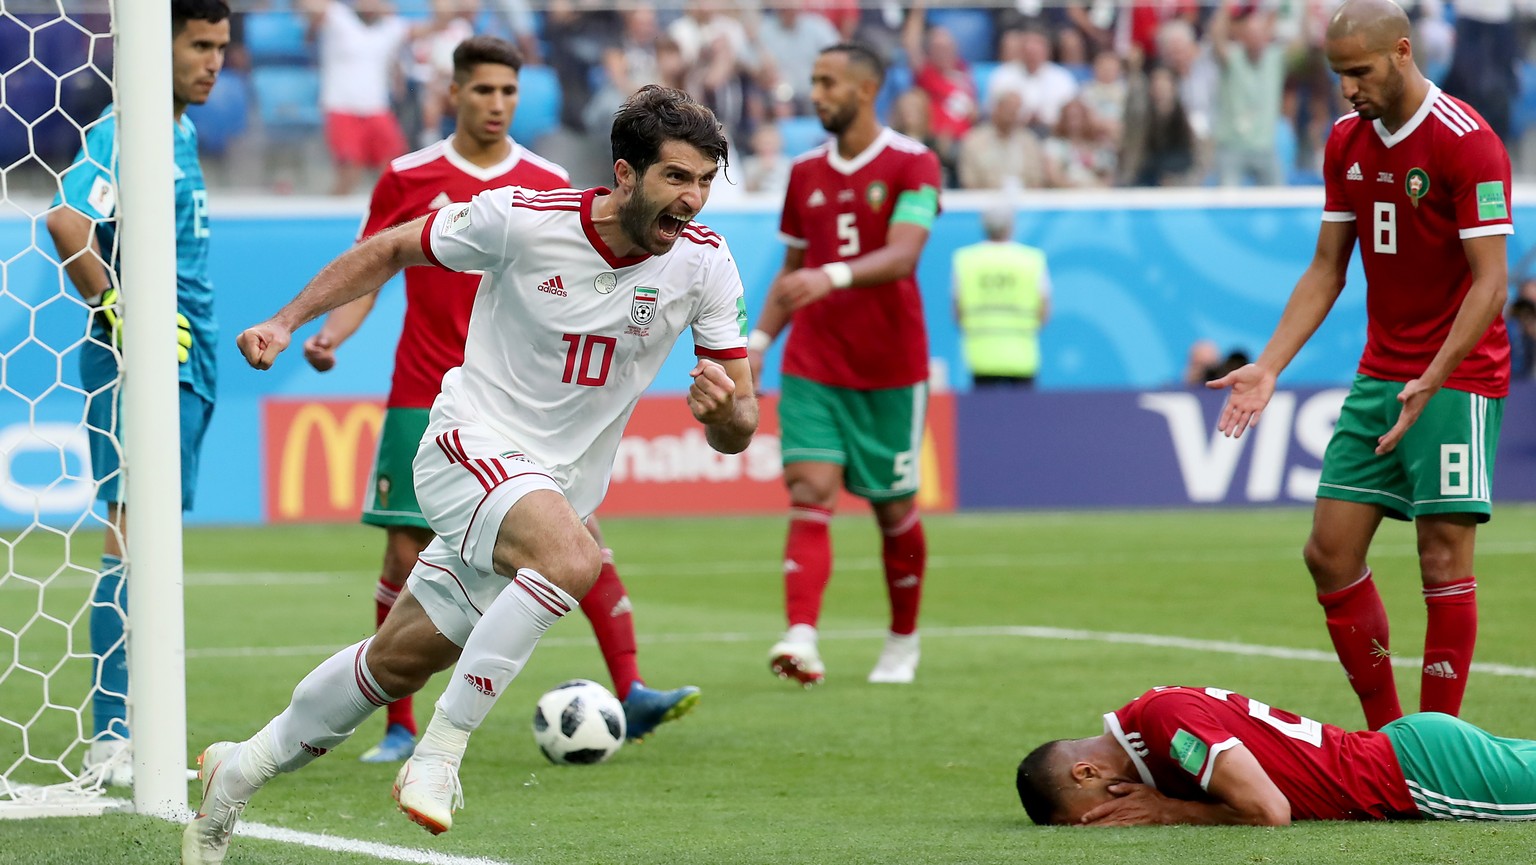 WM 2018 Das Gruppenspiel Marokko